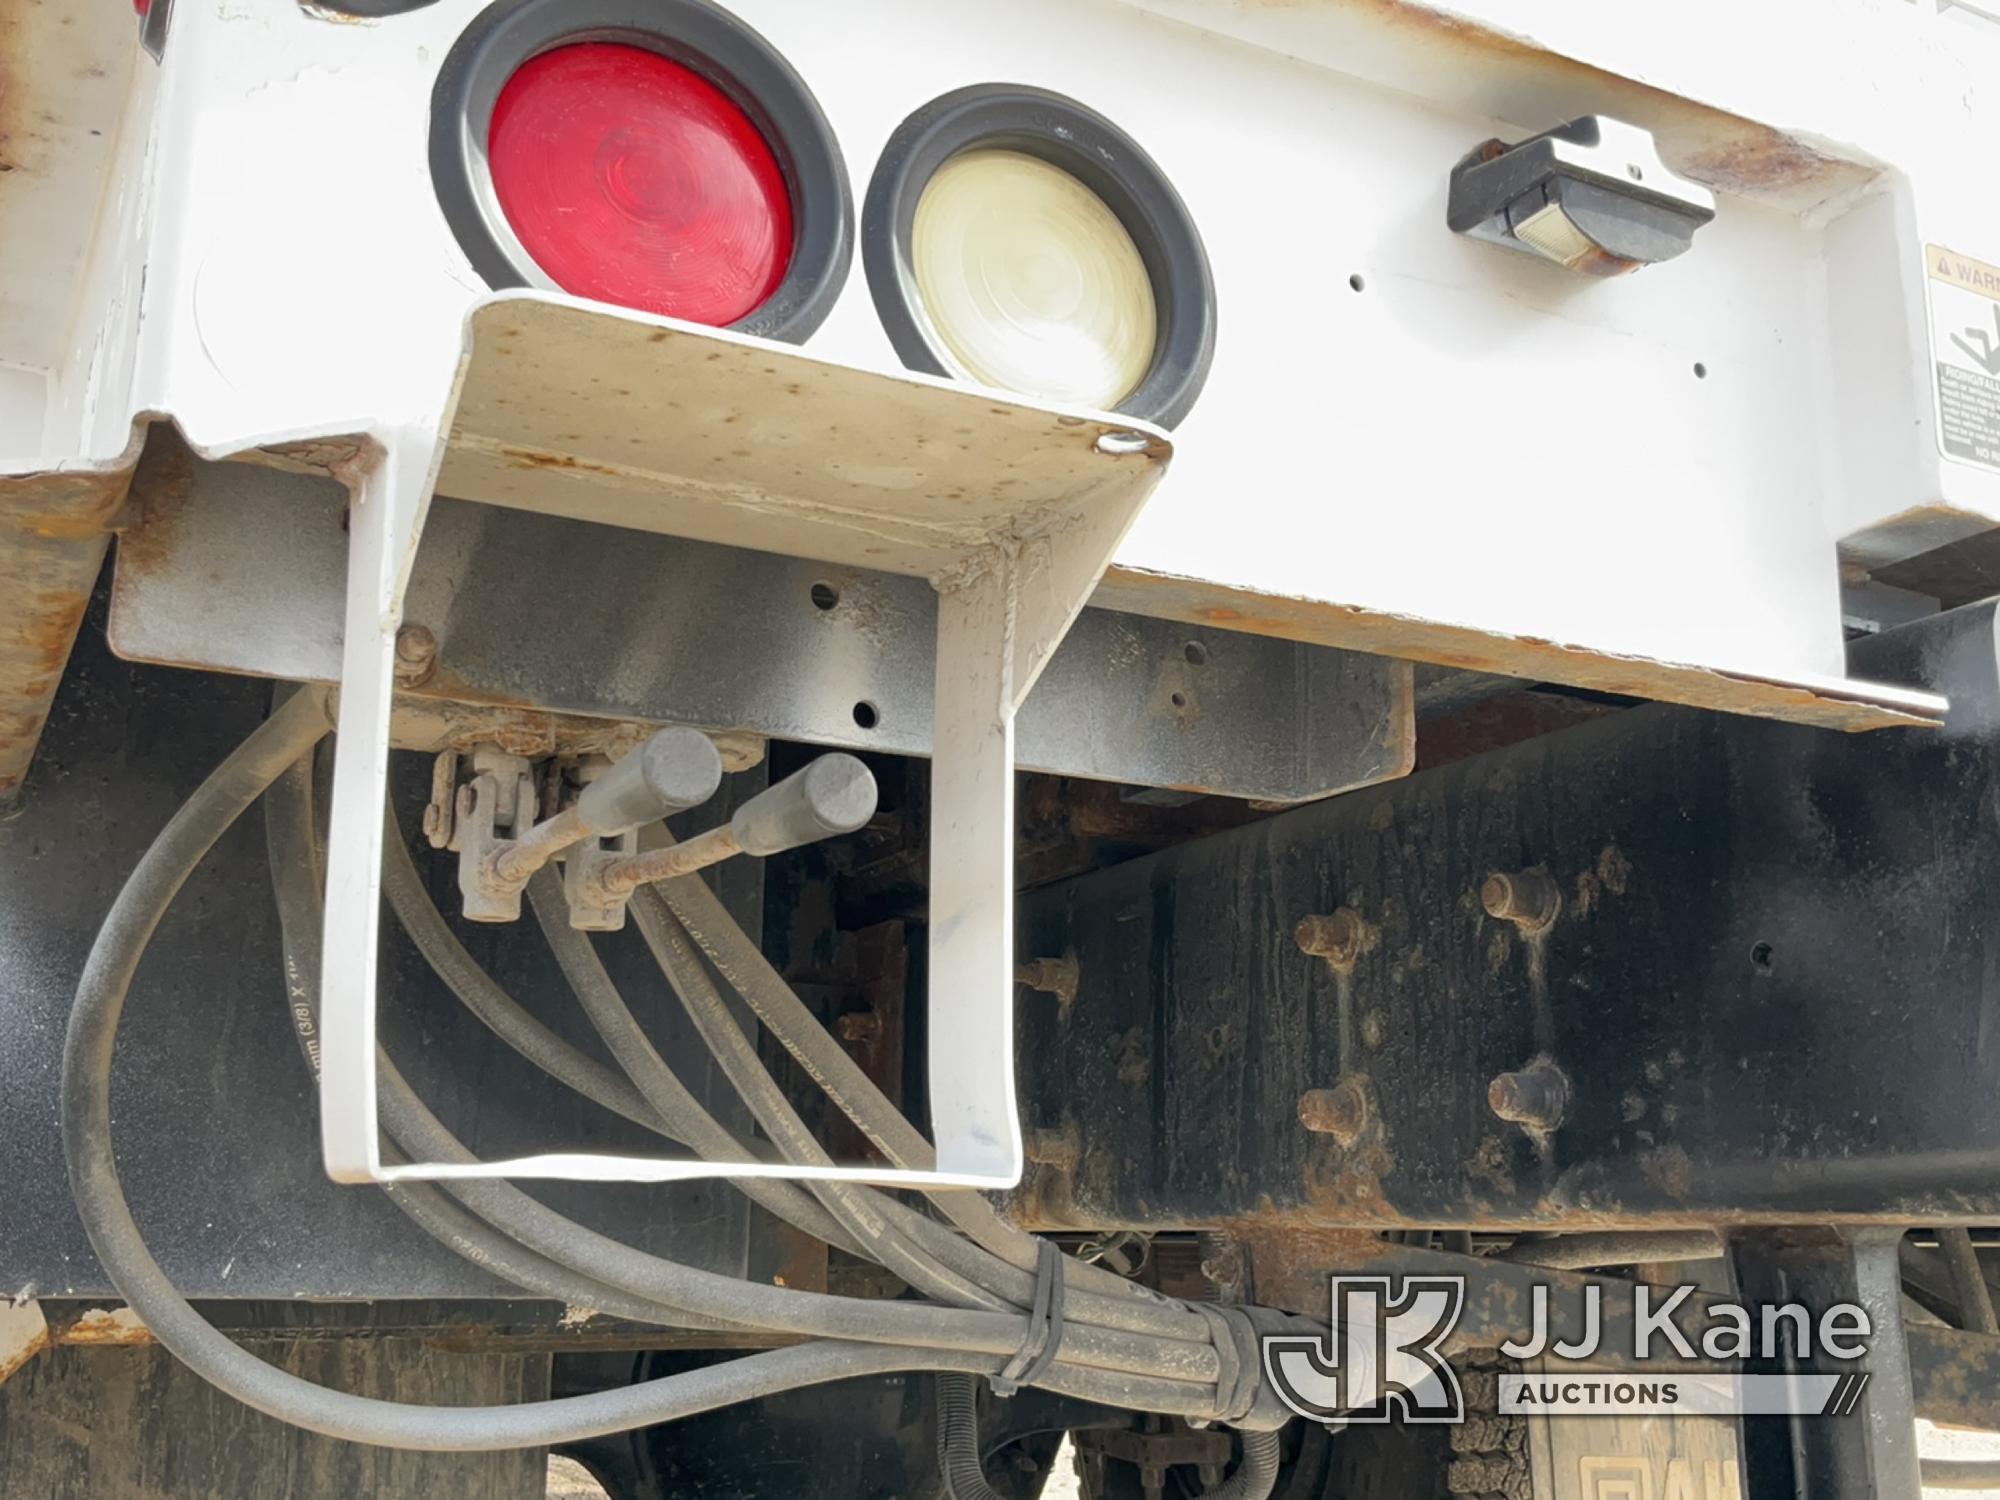 (Charlotte, MI) Altec AM55, Over-Center Material Handling Bucket Truck rear mounted on 2014 Internat